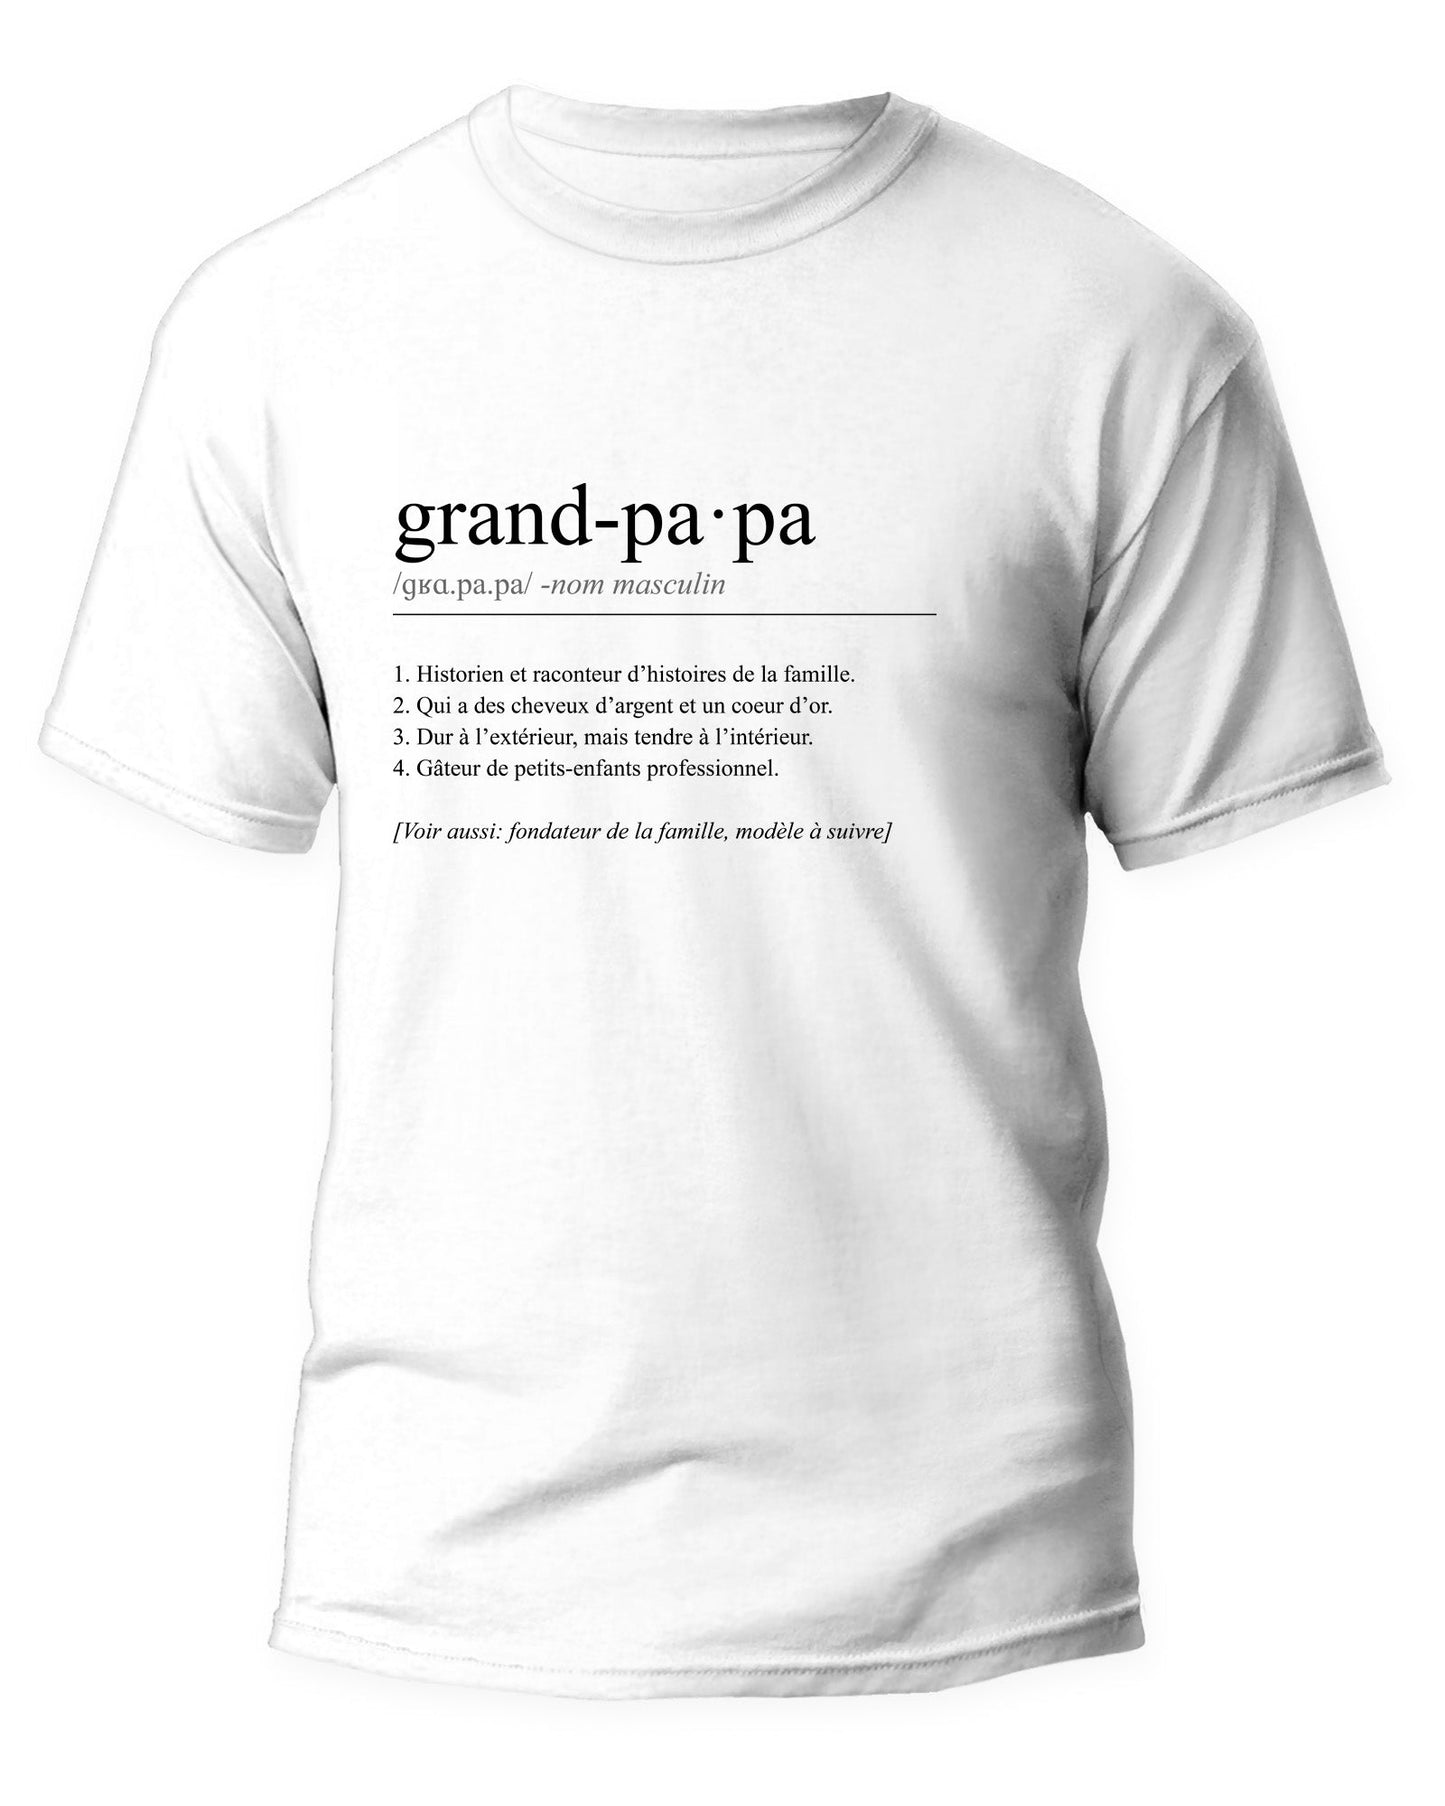 Grand-papa - Sandra Pagé